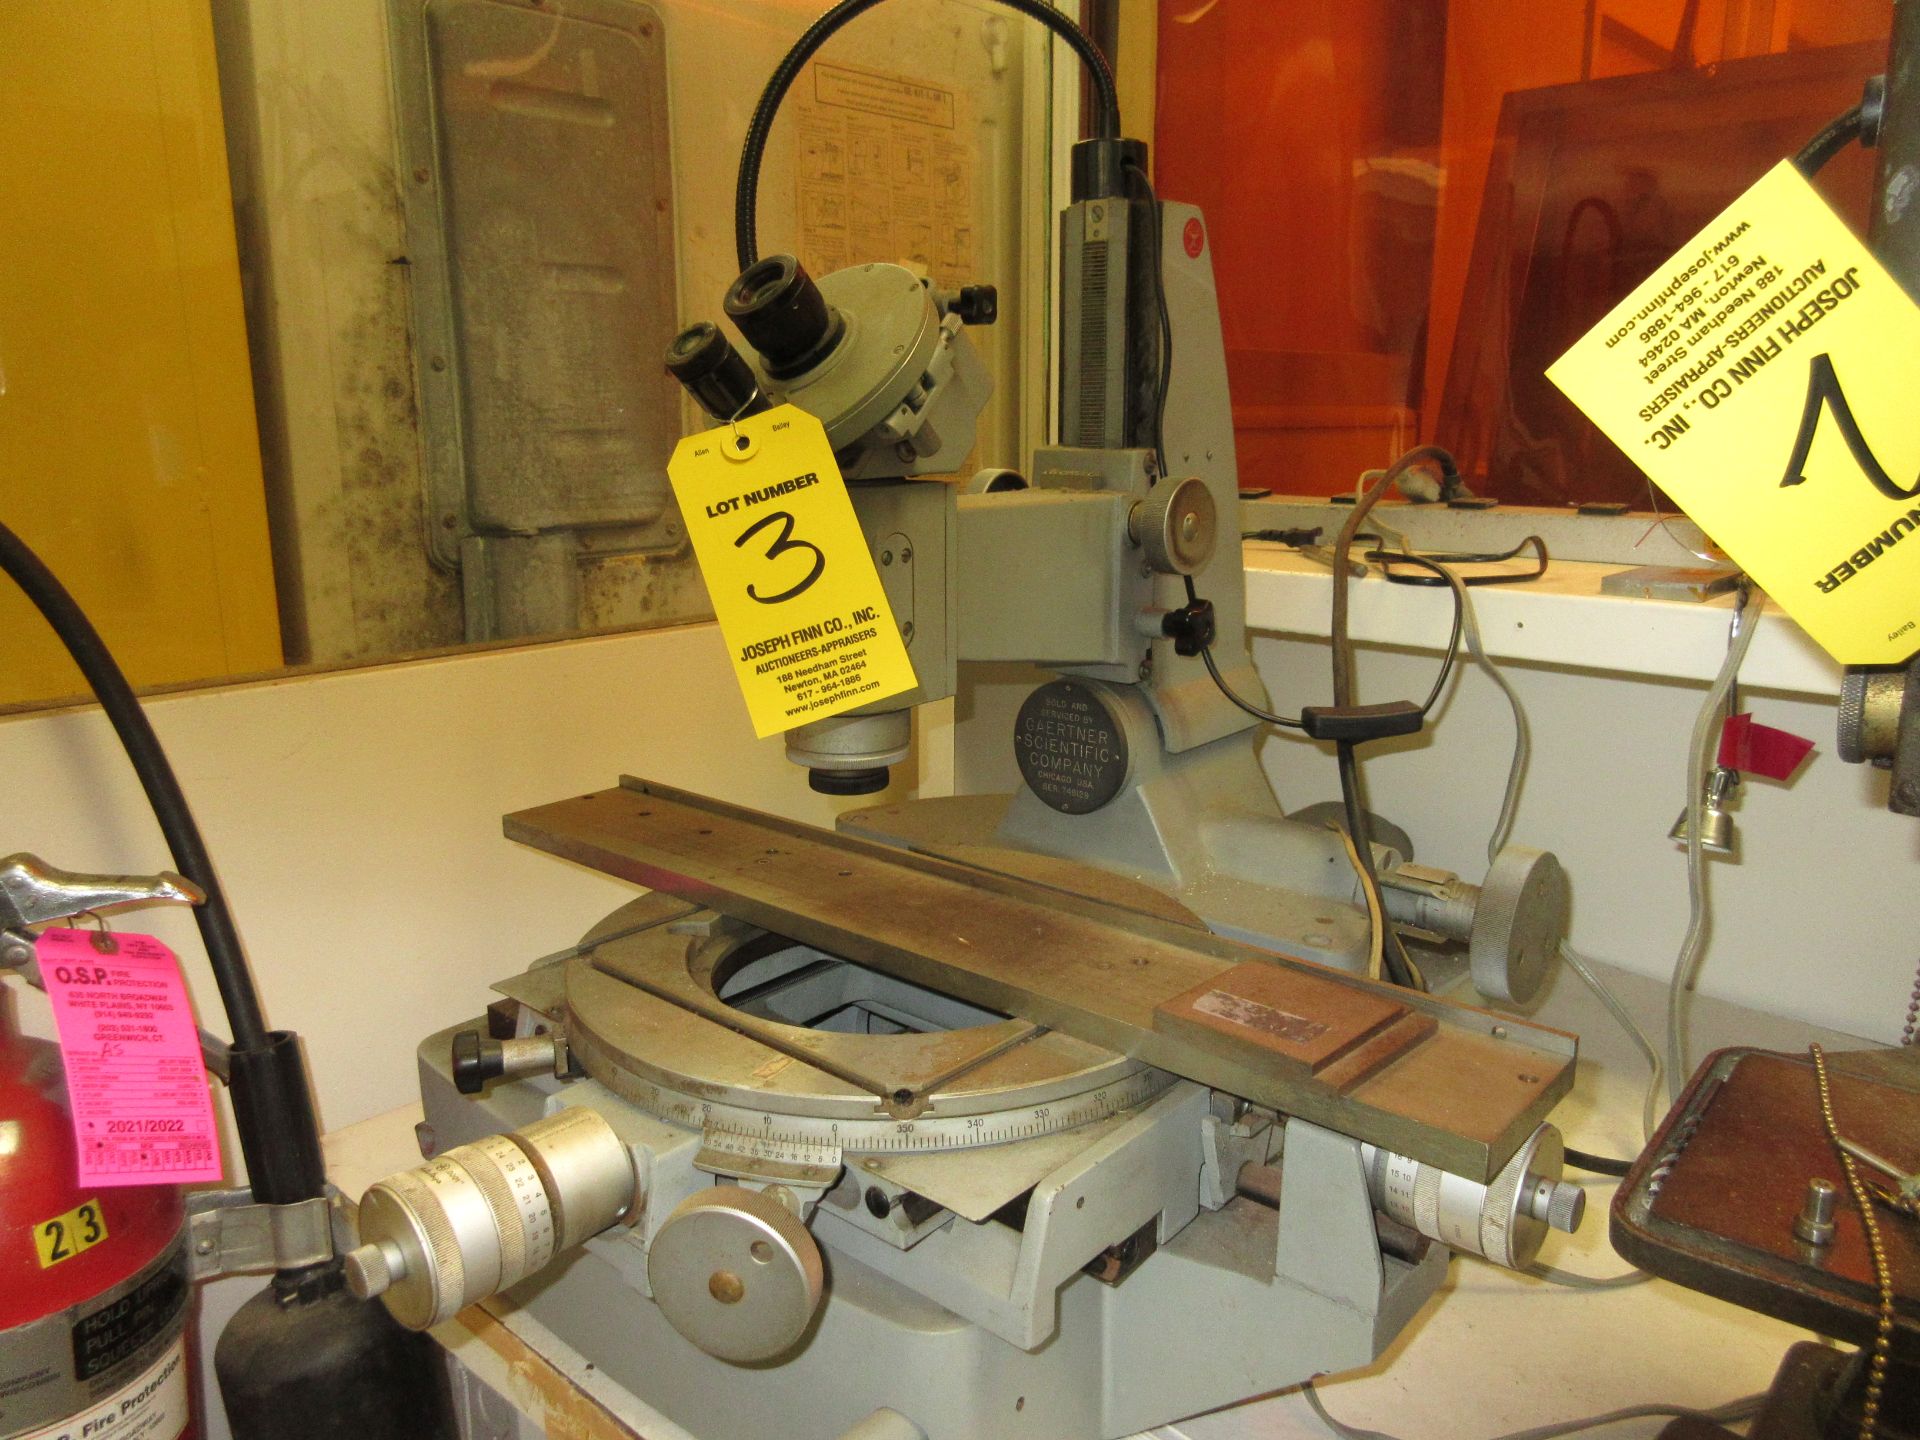 (1) Gaertner Toolmakers Microscope, S/N 748129